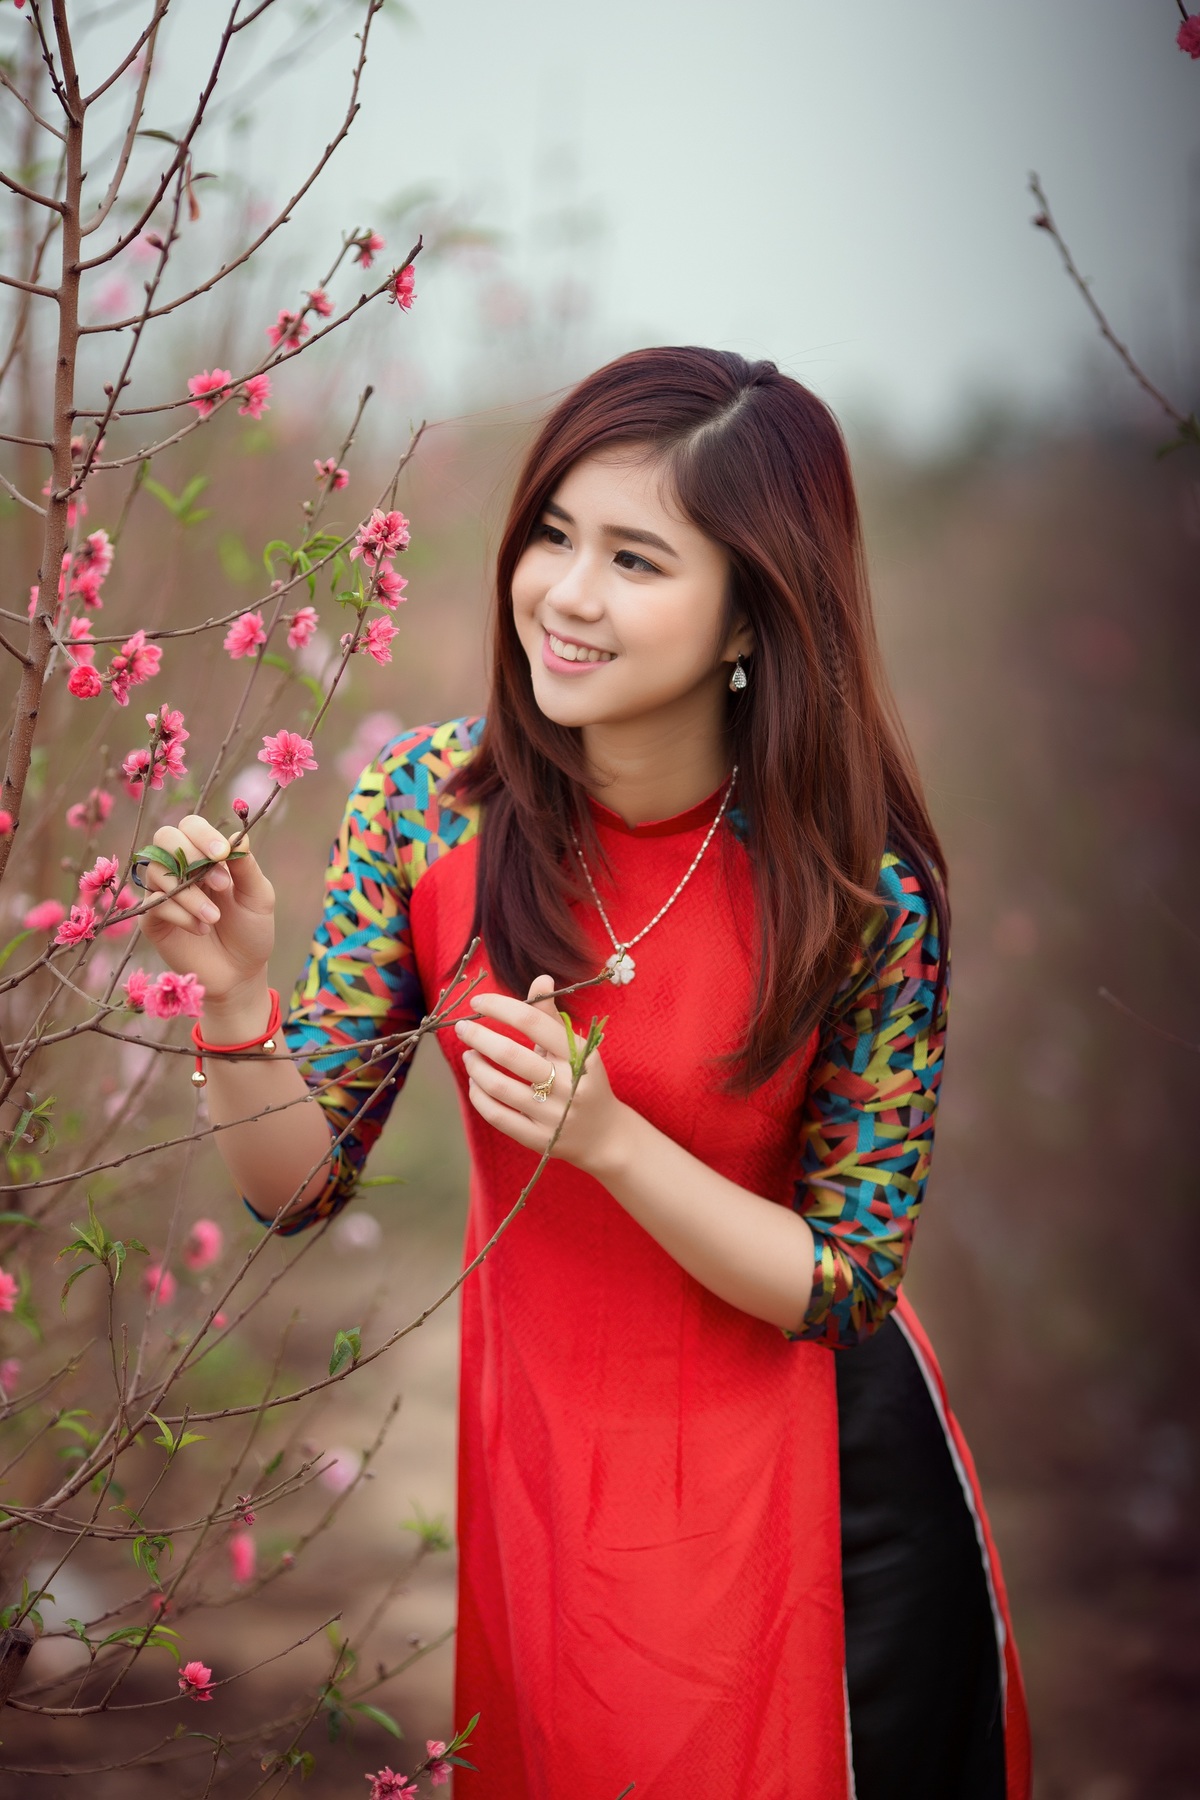 <div style="text-align:justify;"> Hiền mang vẻ dễ thương của một cô gái Việt trong tà áo dài đỏ họa tiết. Cô từng đạt giải Á khôi và Gương mặt khả ái tại cuộc thi nét đẹp Làng sen do Nghệ An tổ chức.</div>